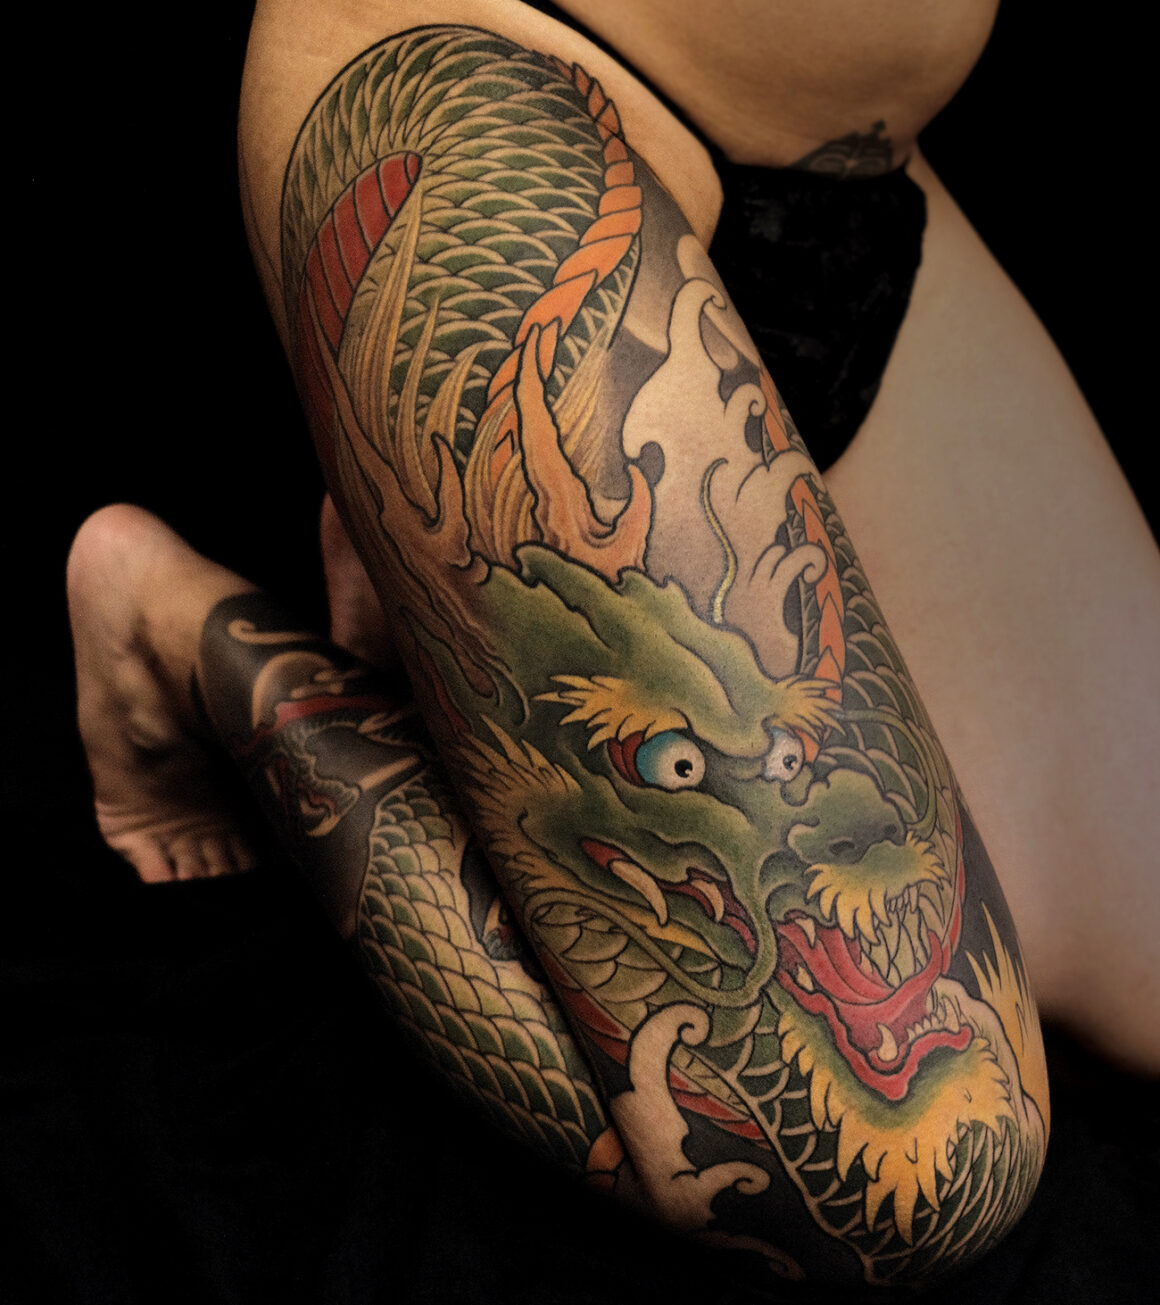 Tattoo by Derek Yip, @derekyiptattoo